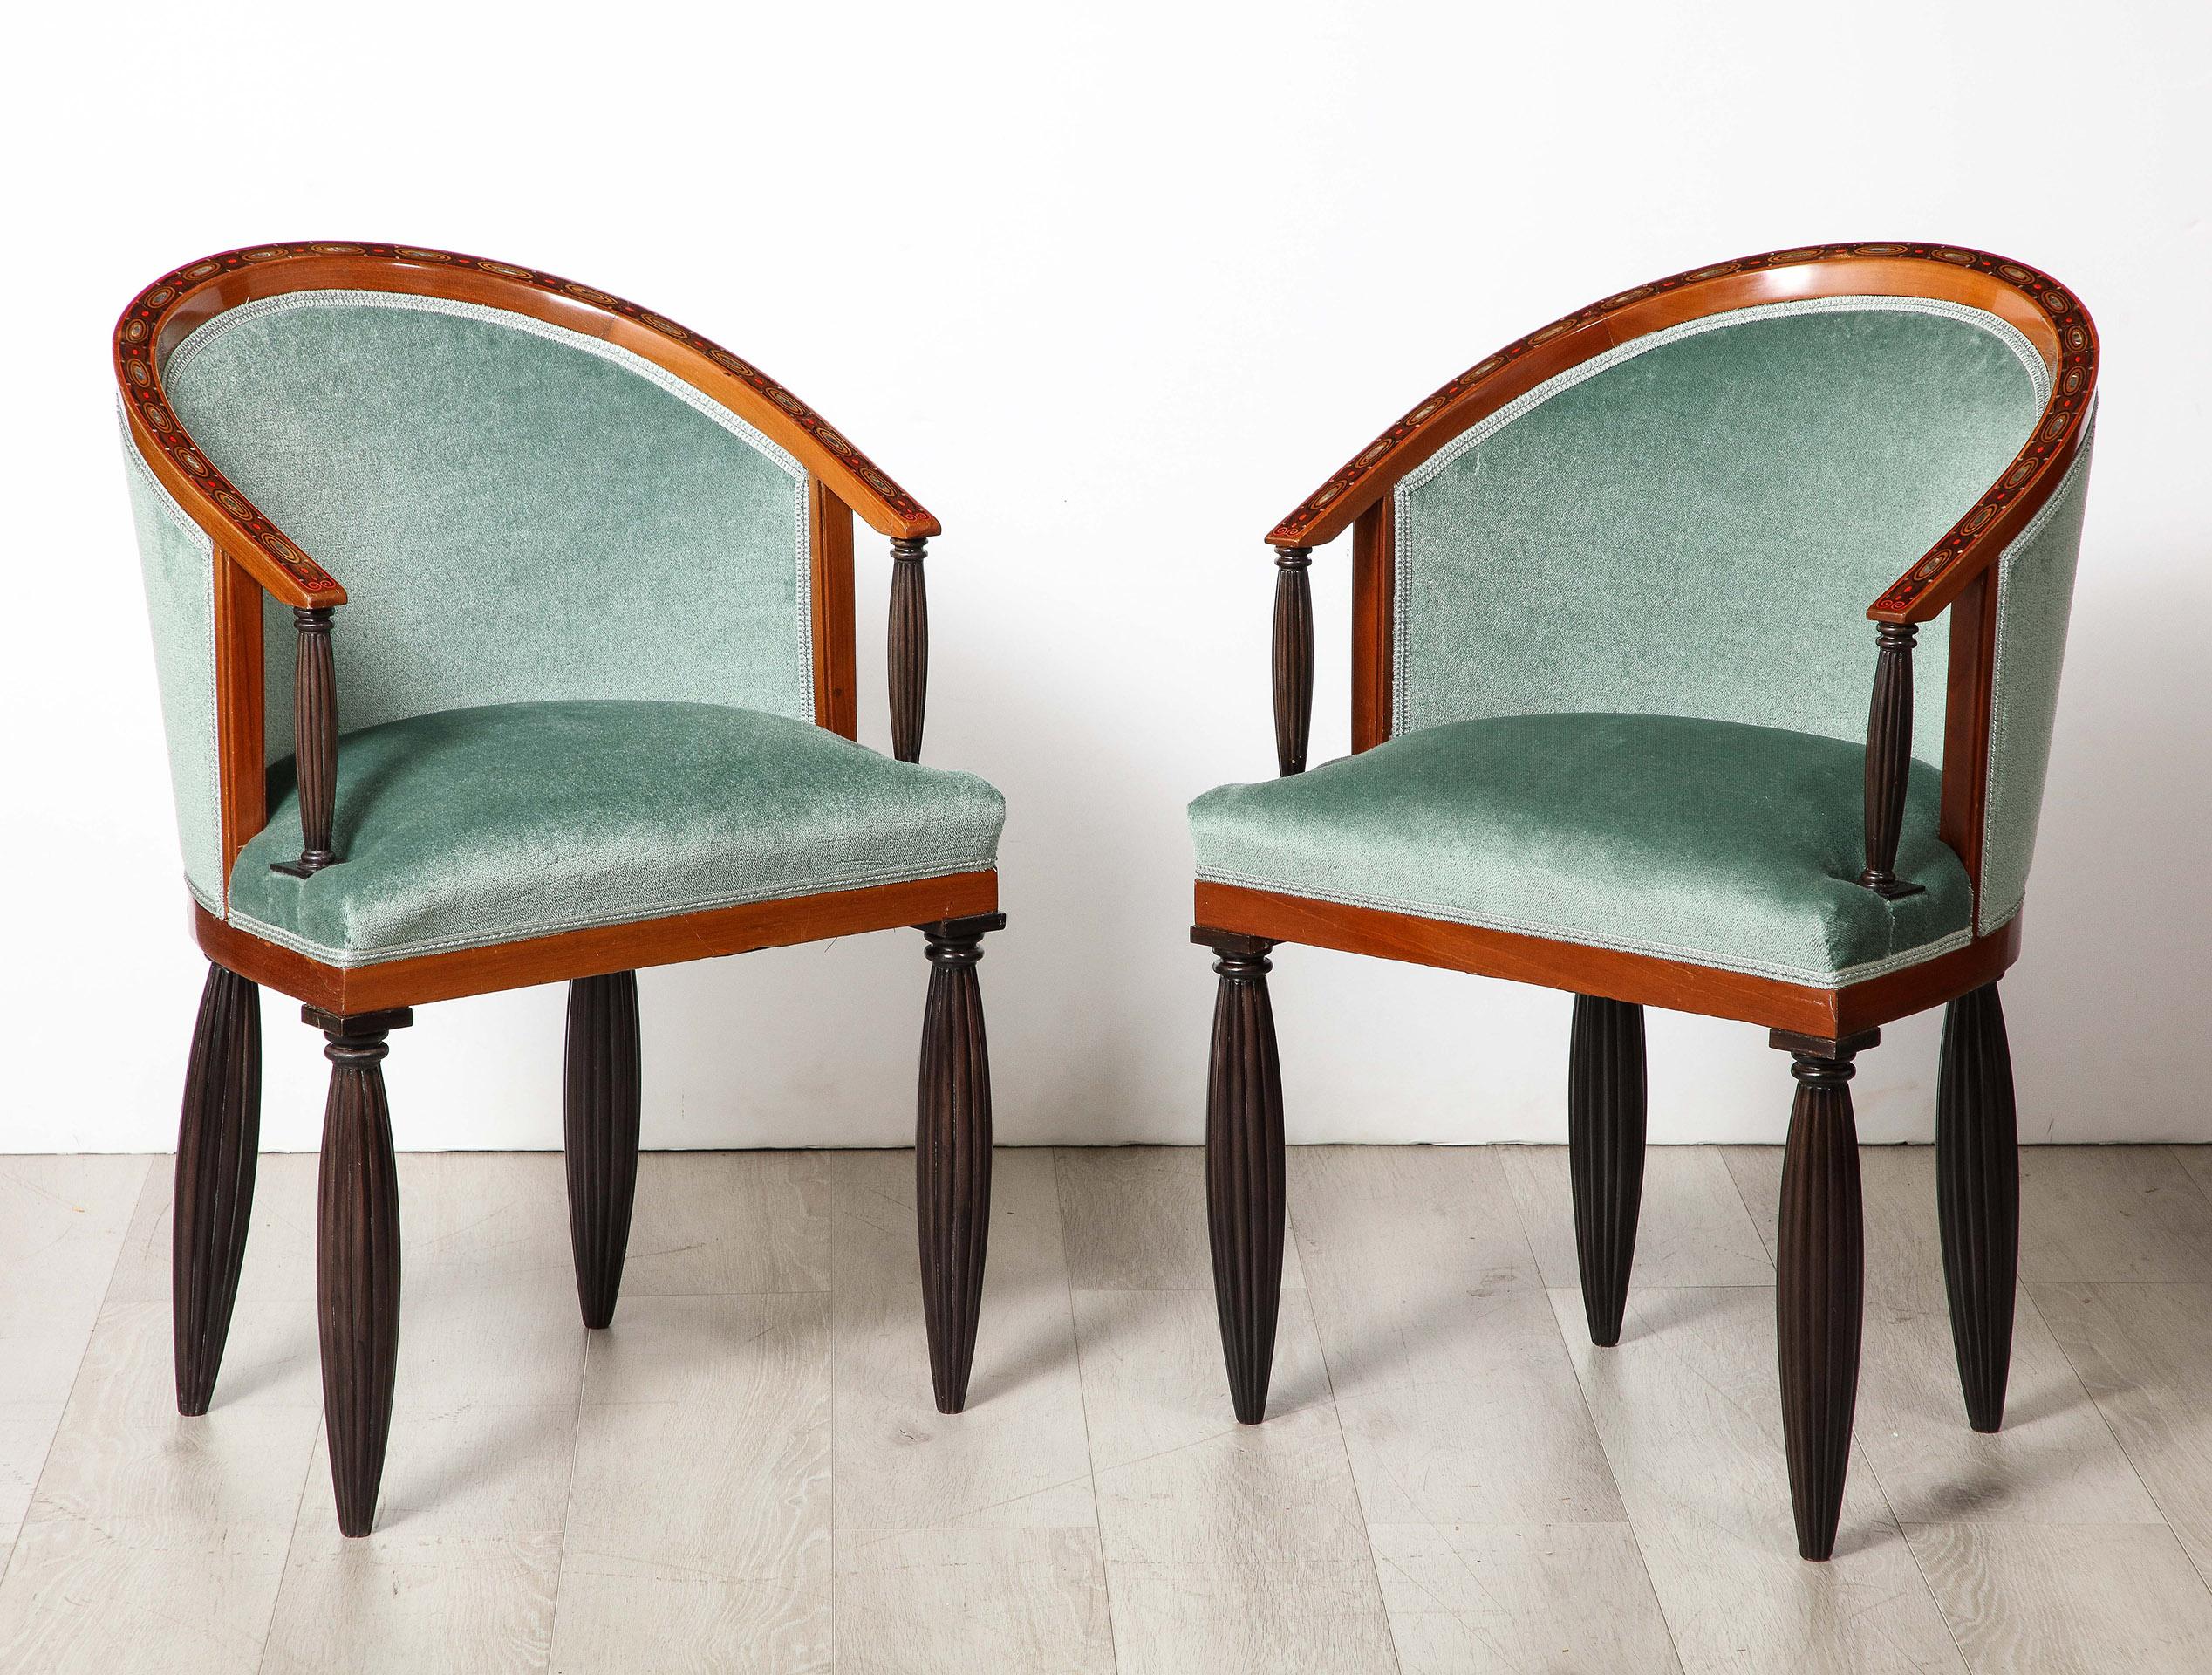 Un superbe exemple du début du design Art déco par Maurice Dufrene. Chacune des huit (8) chaises de salle à manger est constituée d'un cadre incrusté de  bois fruitier et nacre. Le cadre est orné de colonnes cannelées en bois de rose et repose sur